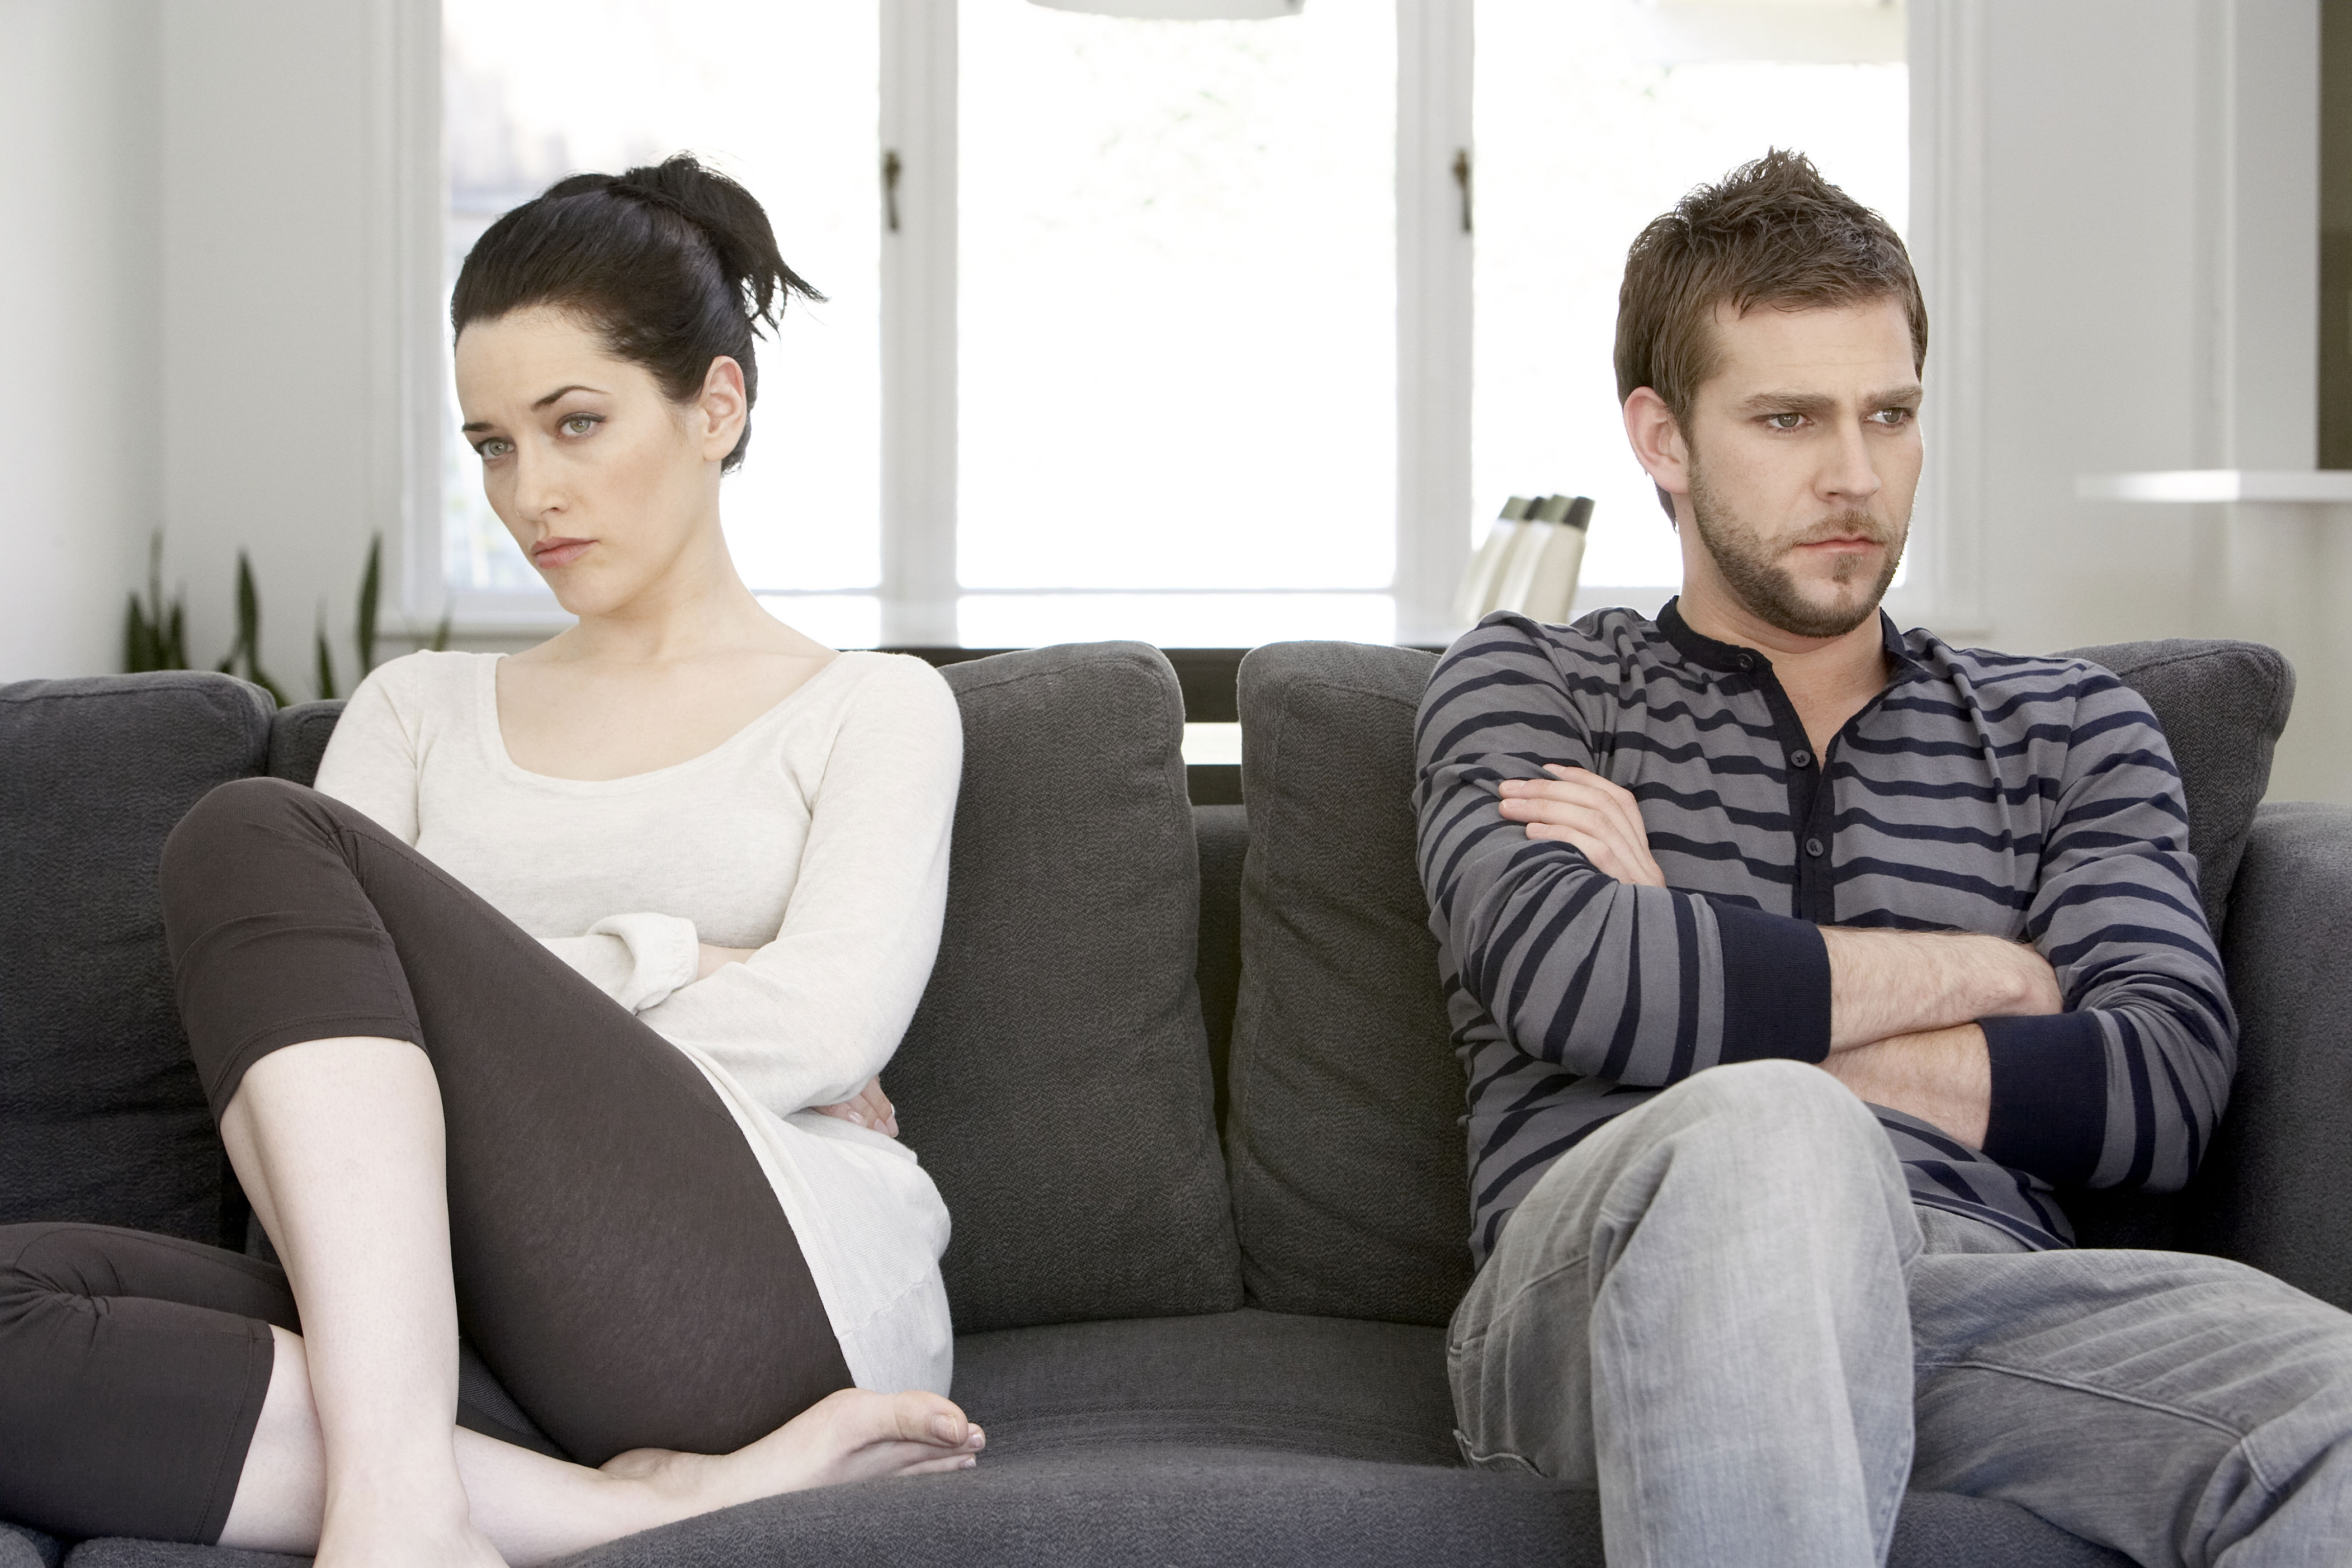 mit tegyél féltékenység esetén a pszichológus szerint?